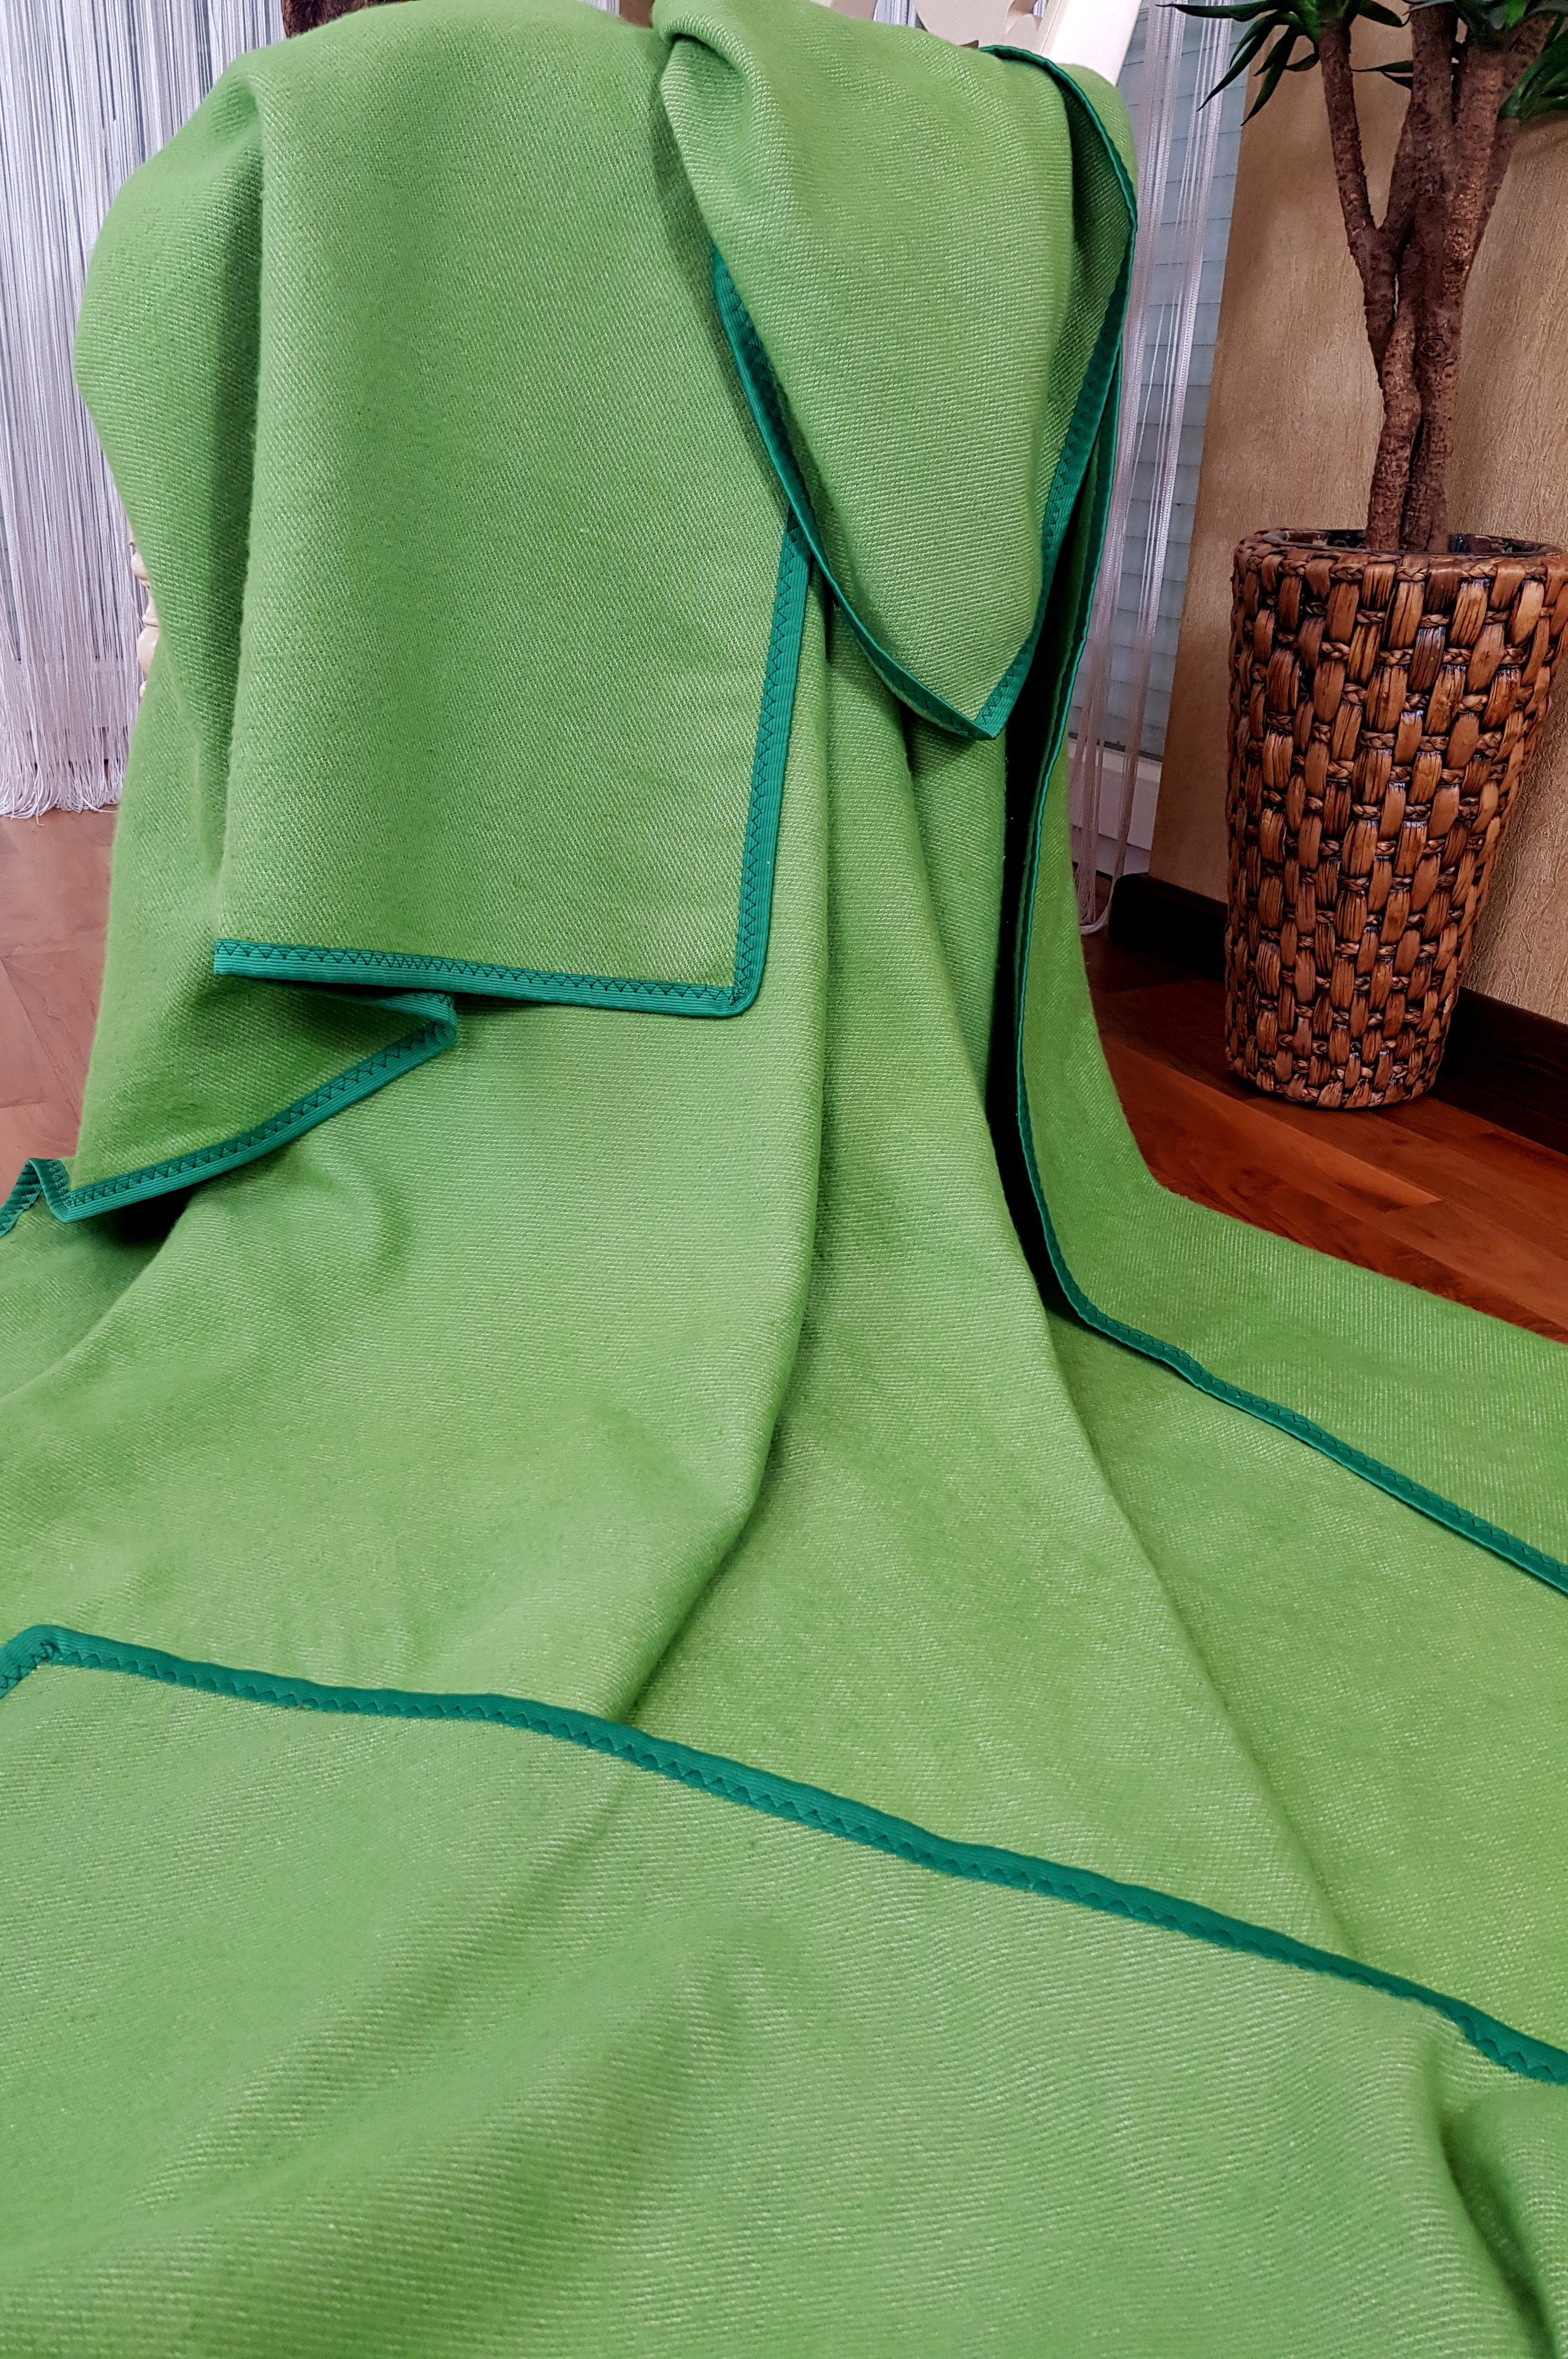 Wohndecke Baumwolldecke x Plaid Grün versch. 150 Tagesdecke in cm STTS 205 Korsika, Farben